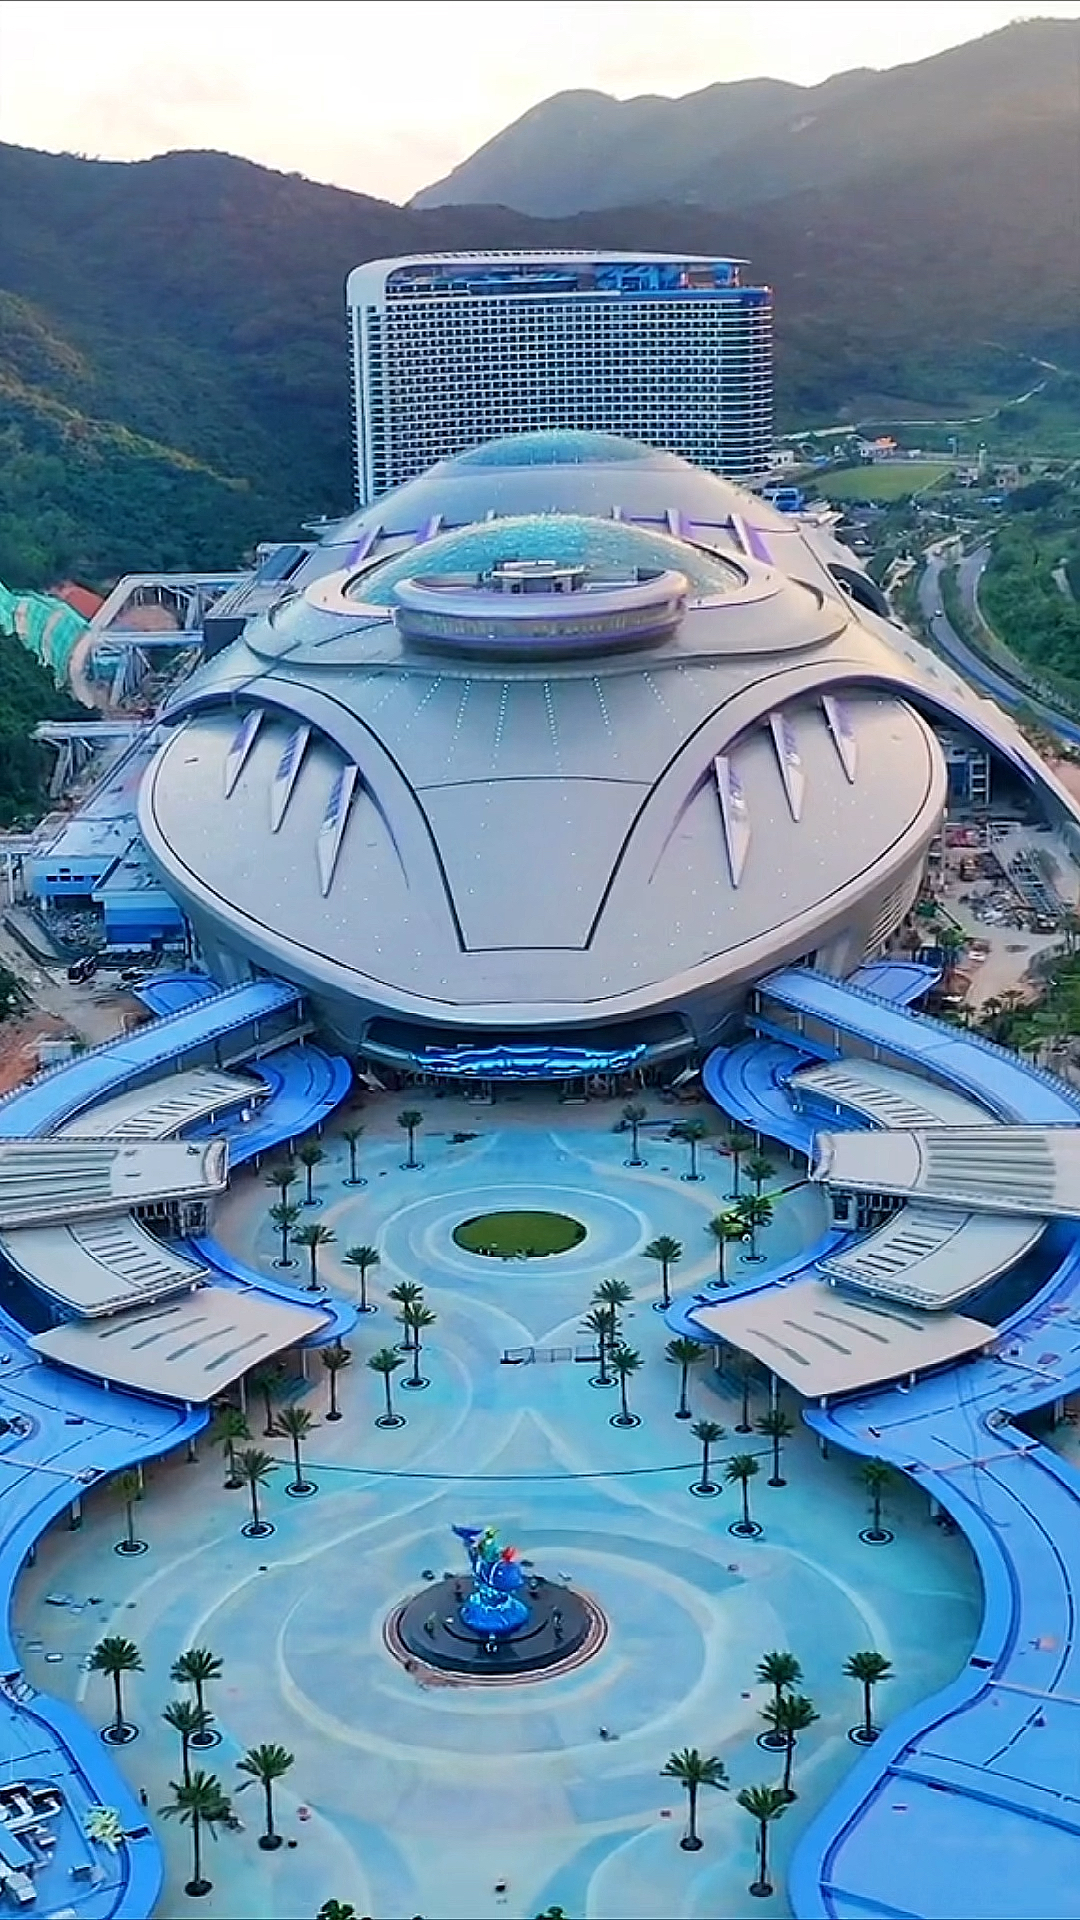 珠海长隆海洋科学乐园犹如一艘来自未来的外星巨舰,太炫酷了